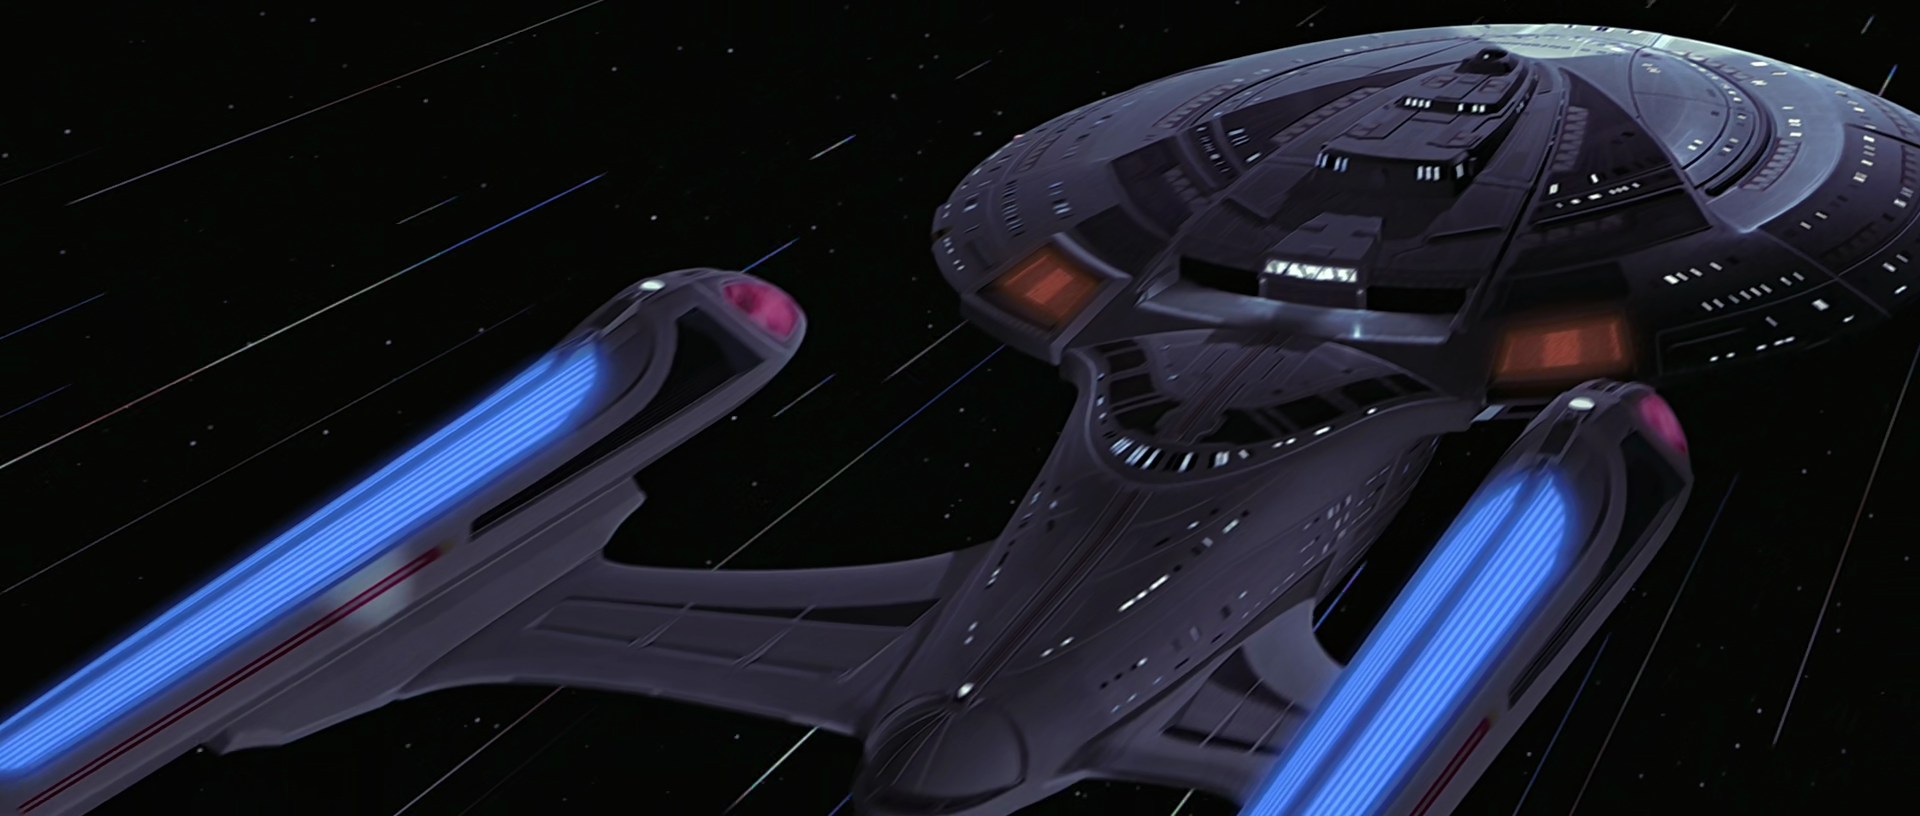 star trek insurrection enterprise